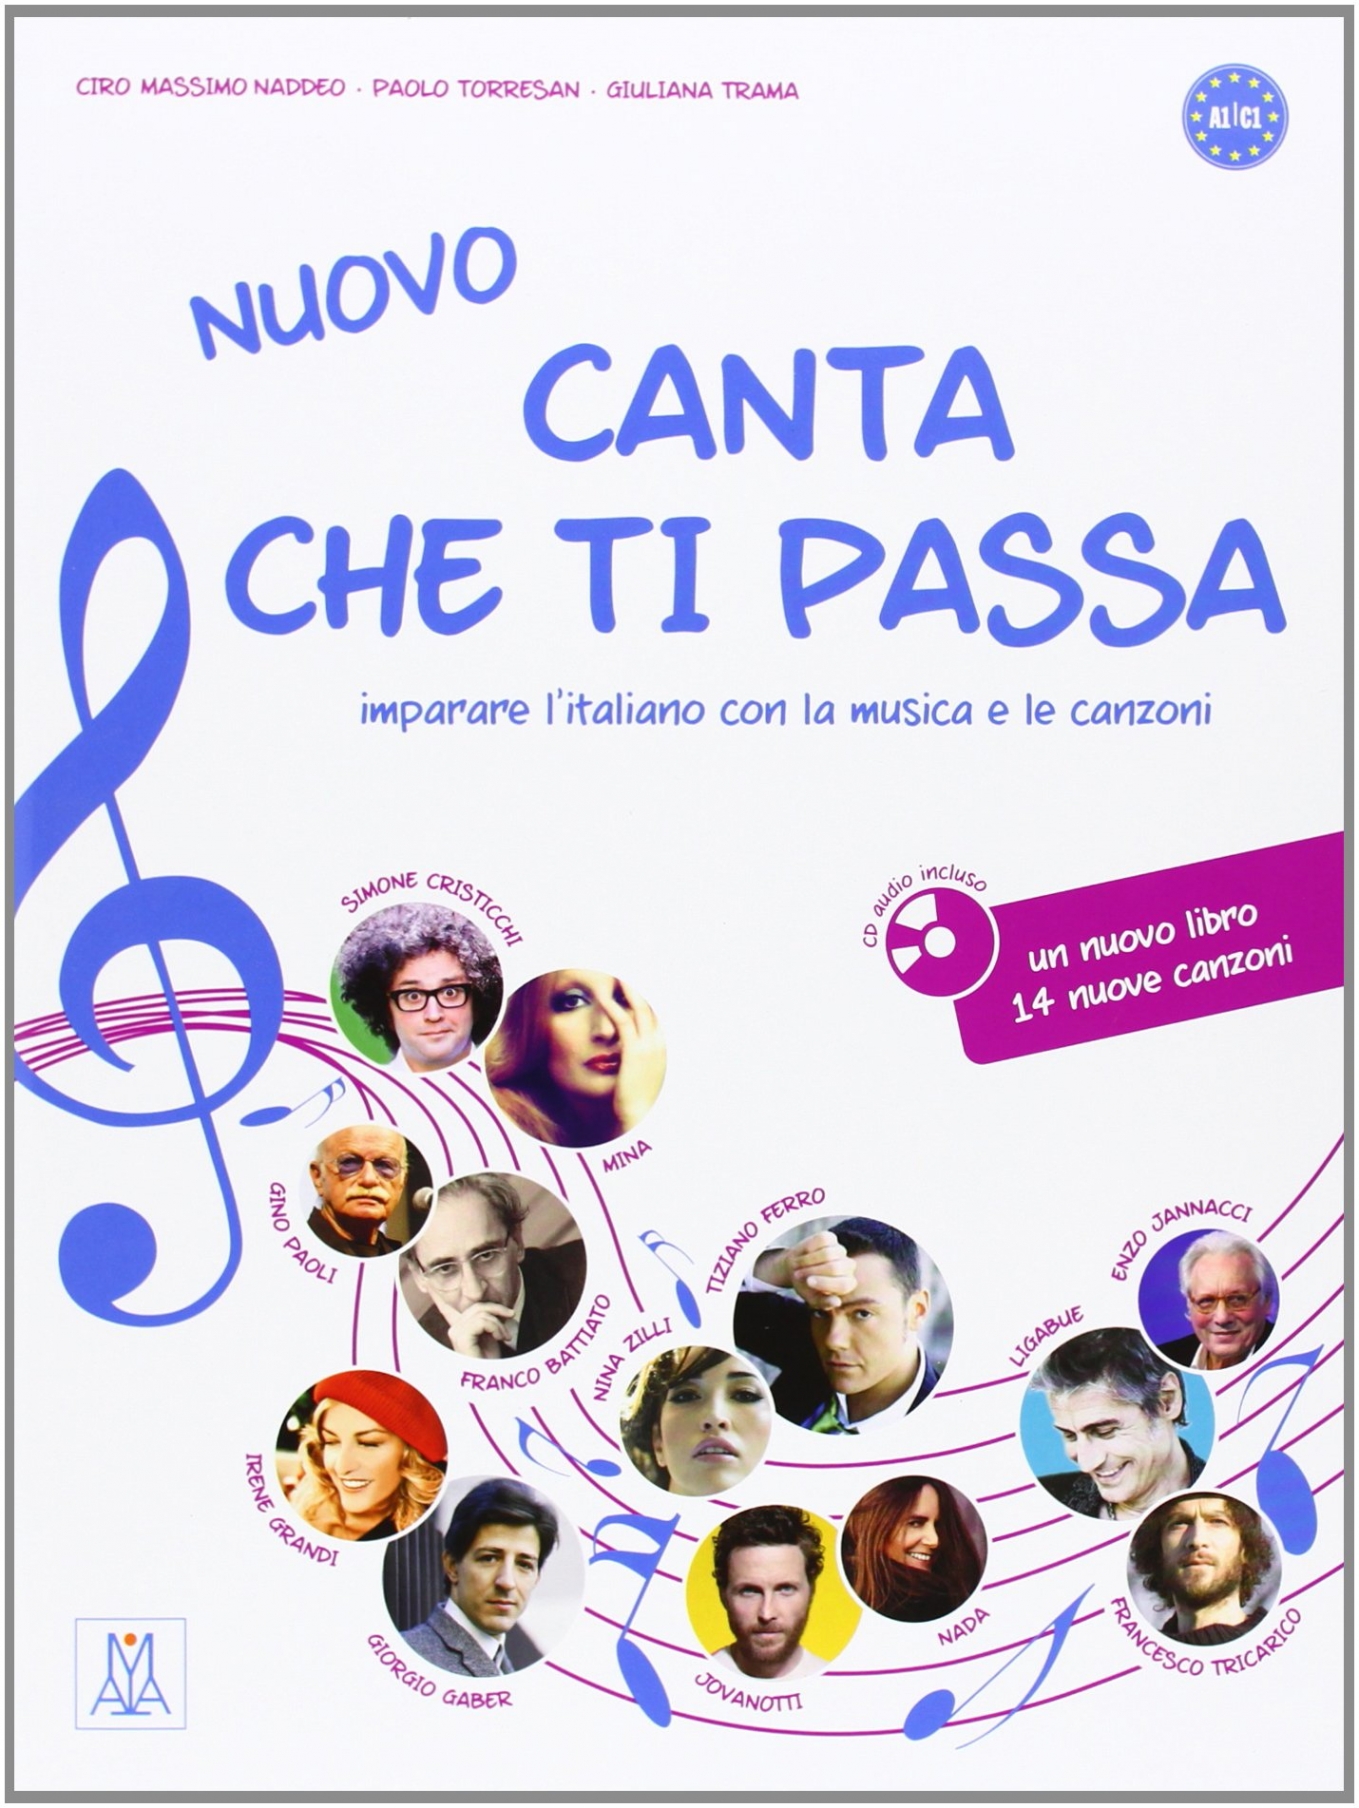 Ciro Massimo Naddeo, Giuliana Trama, Paolo Torresan Nuovo Canta che ti passa + CD audio 